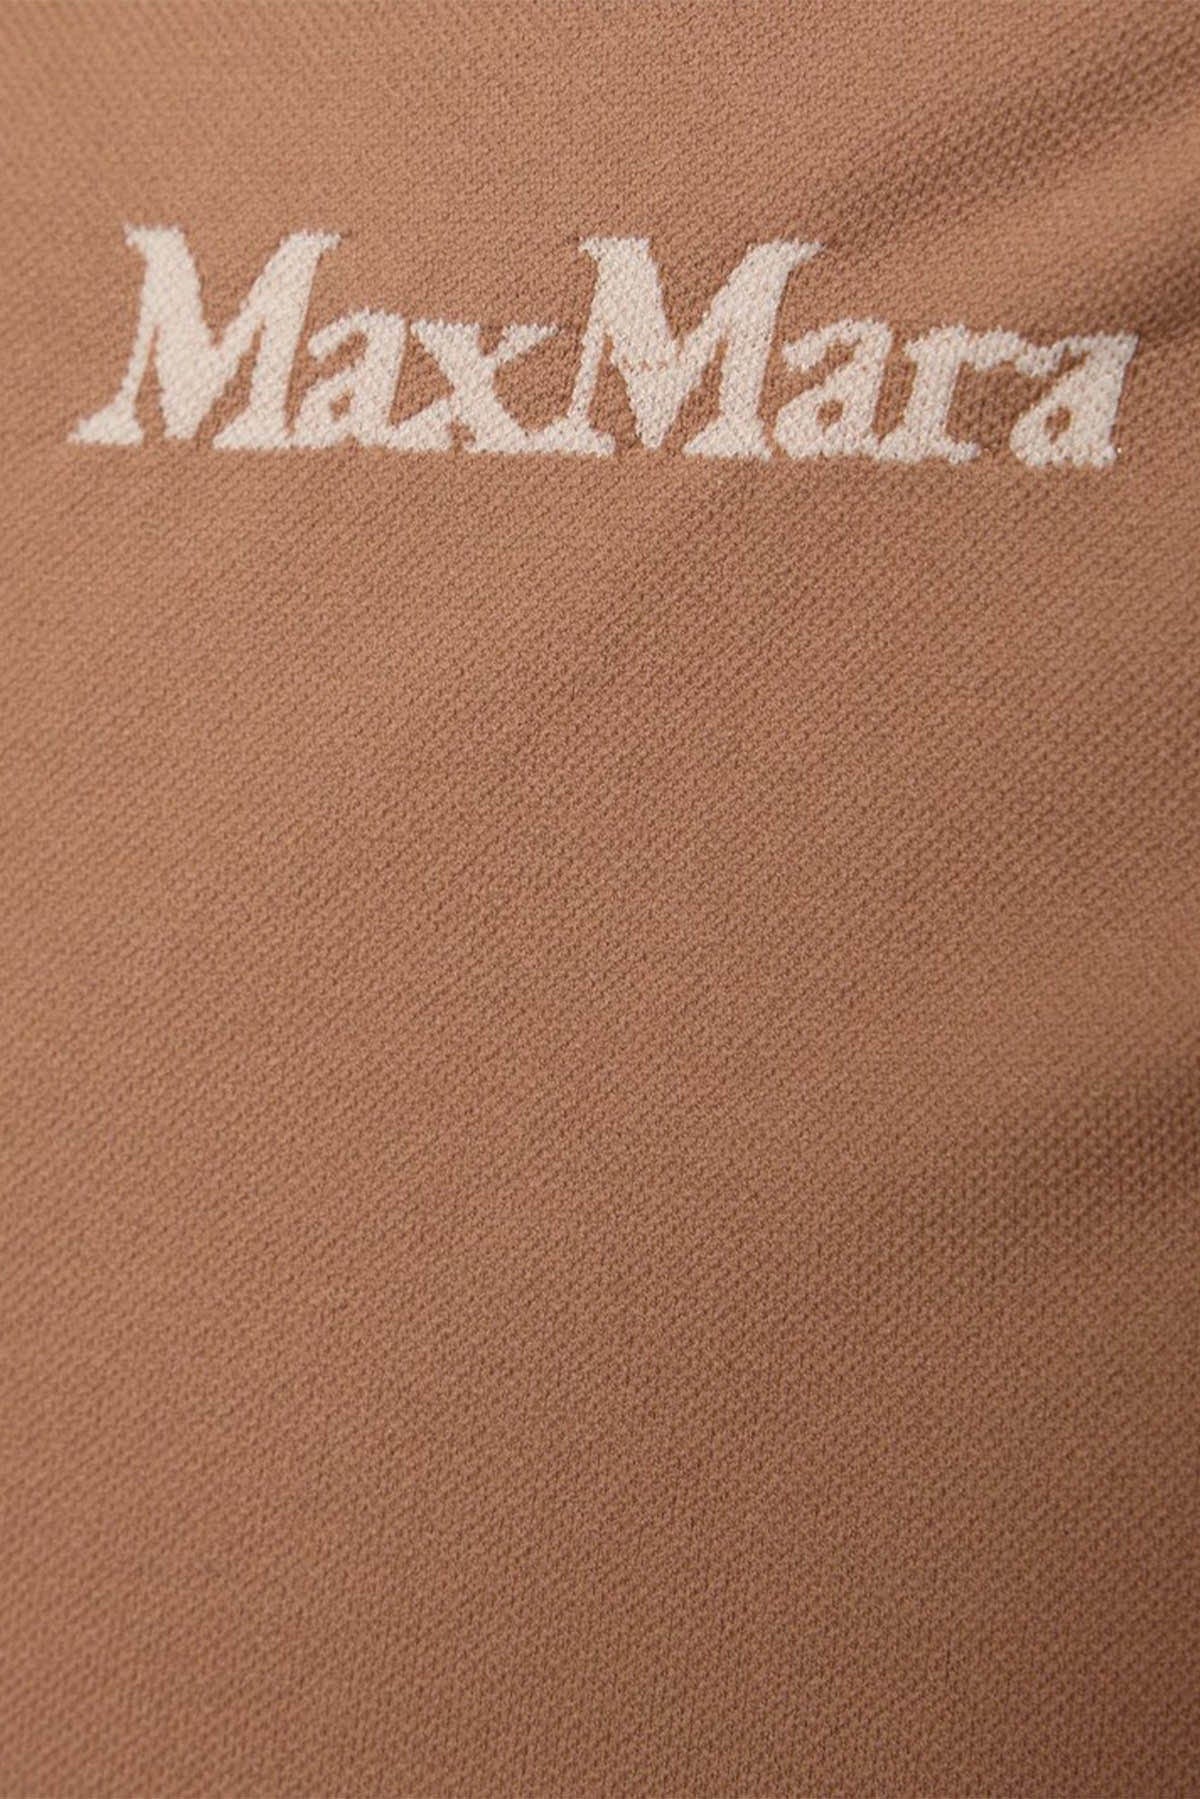 MAXMARA&#39;S BRANDS BODY/ TOP  Top Sportivo Elasticizzato &#39;S Max Mara Fiocchi